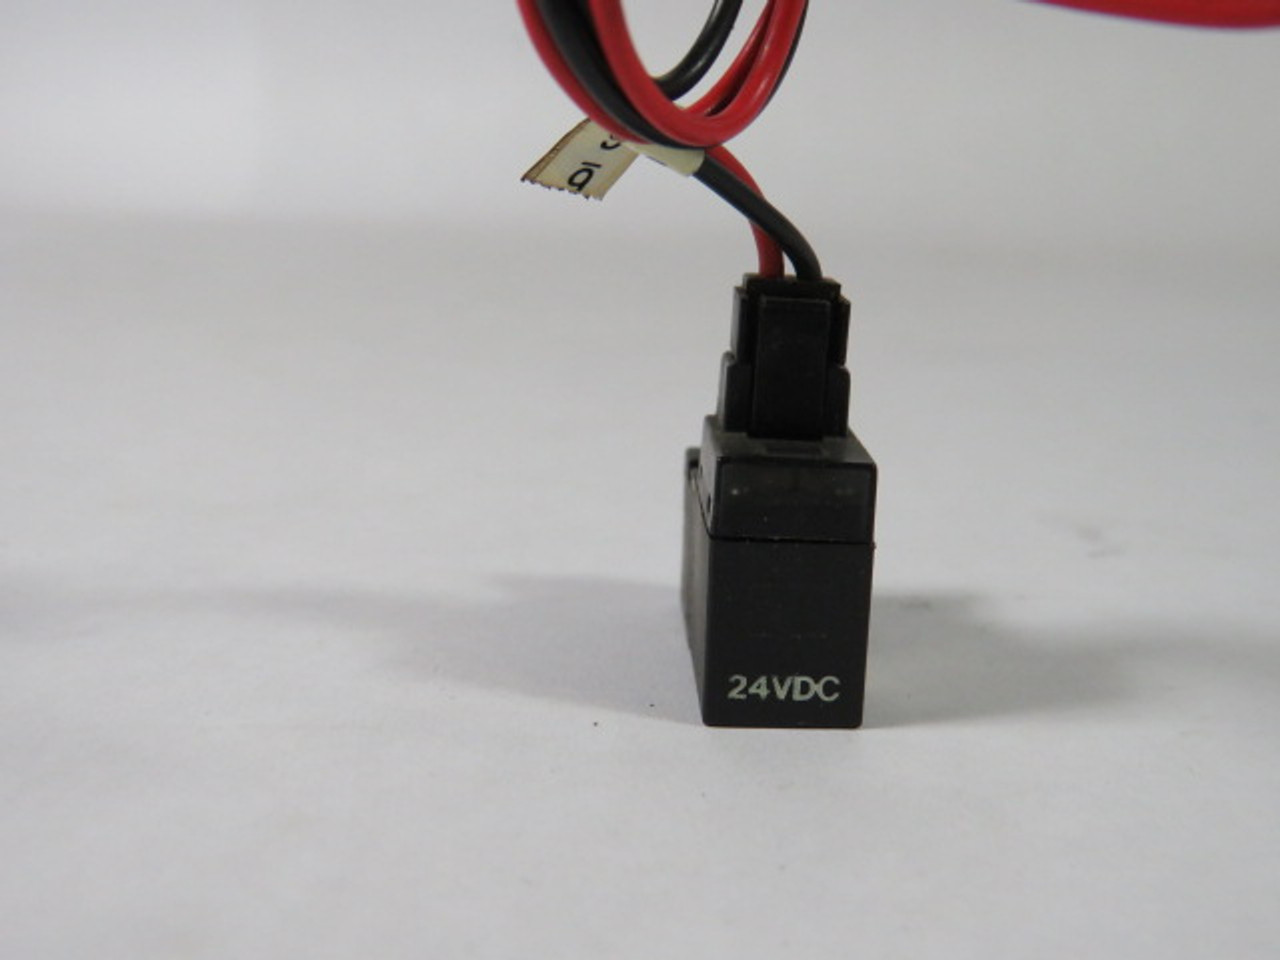 SMC VJ114 Solenoid Valve Coil 24VDC 0-7MPa USED